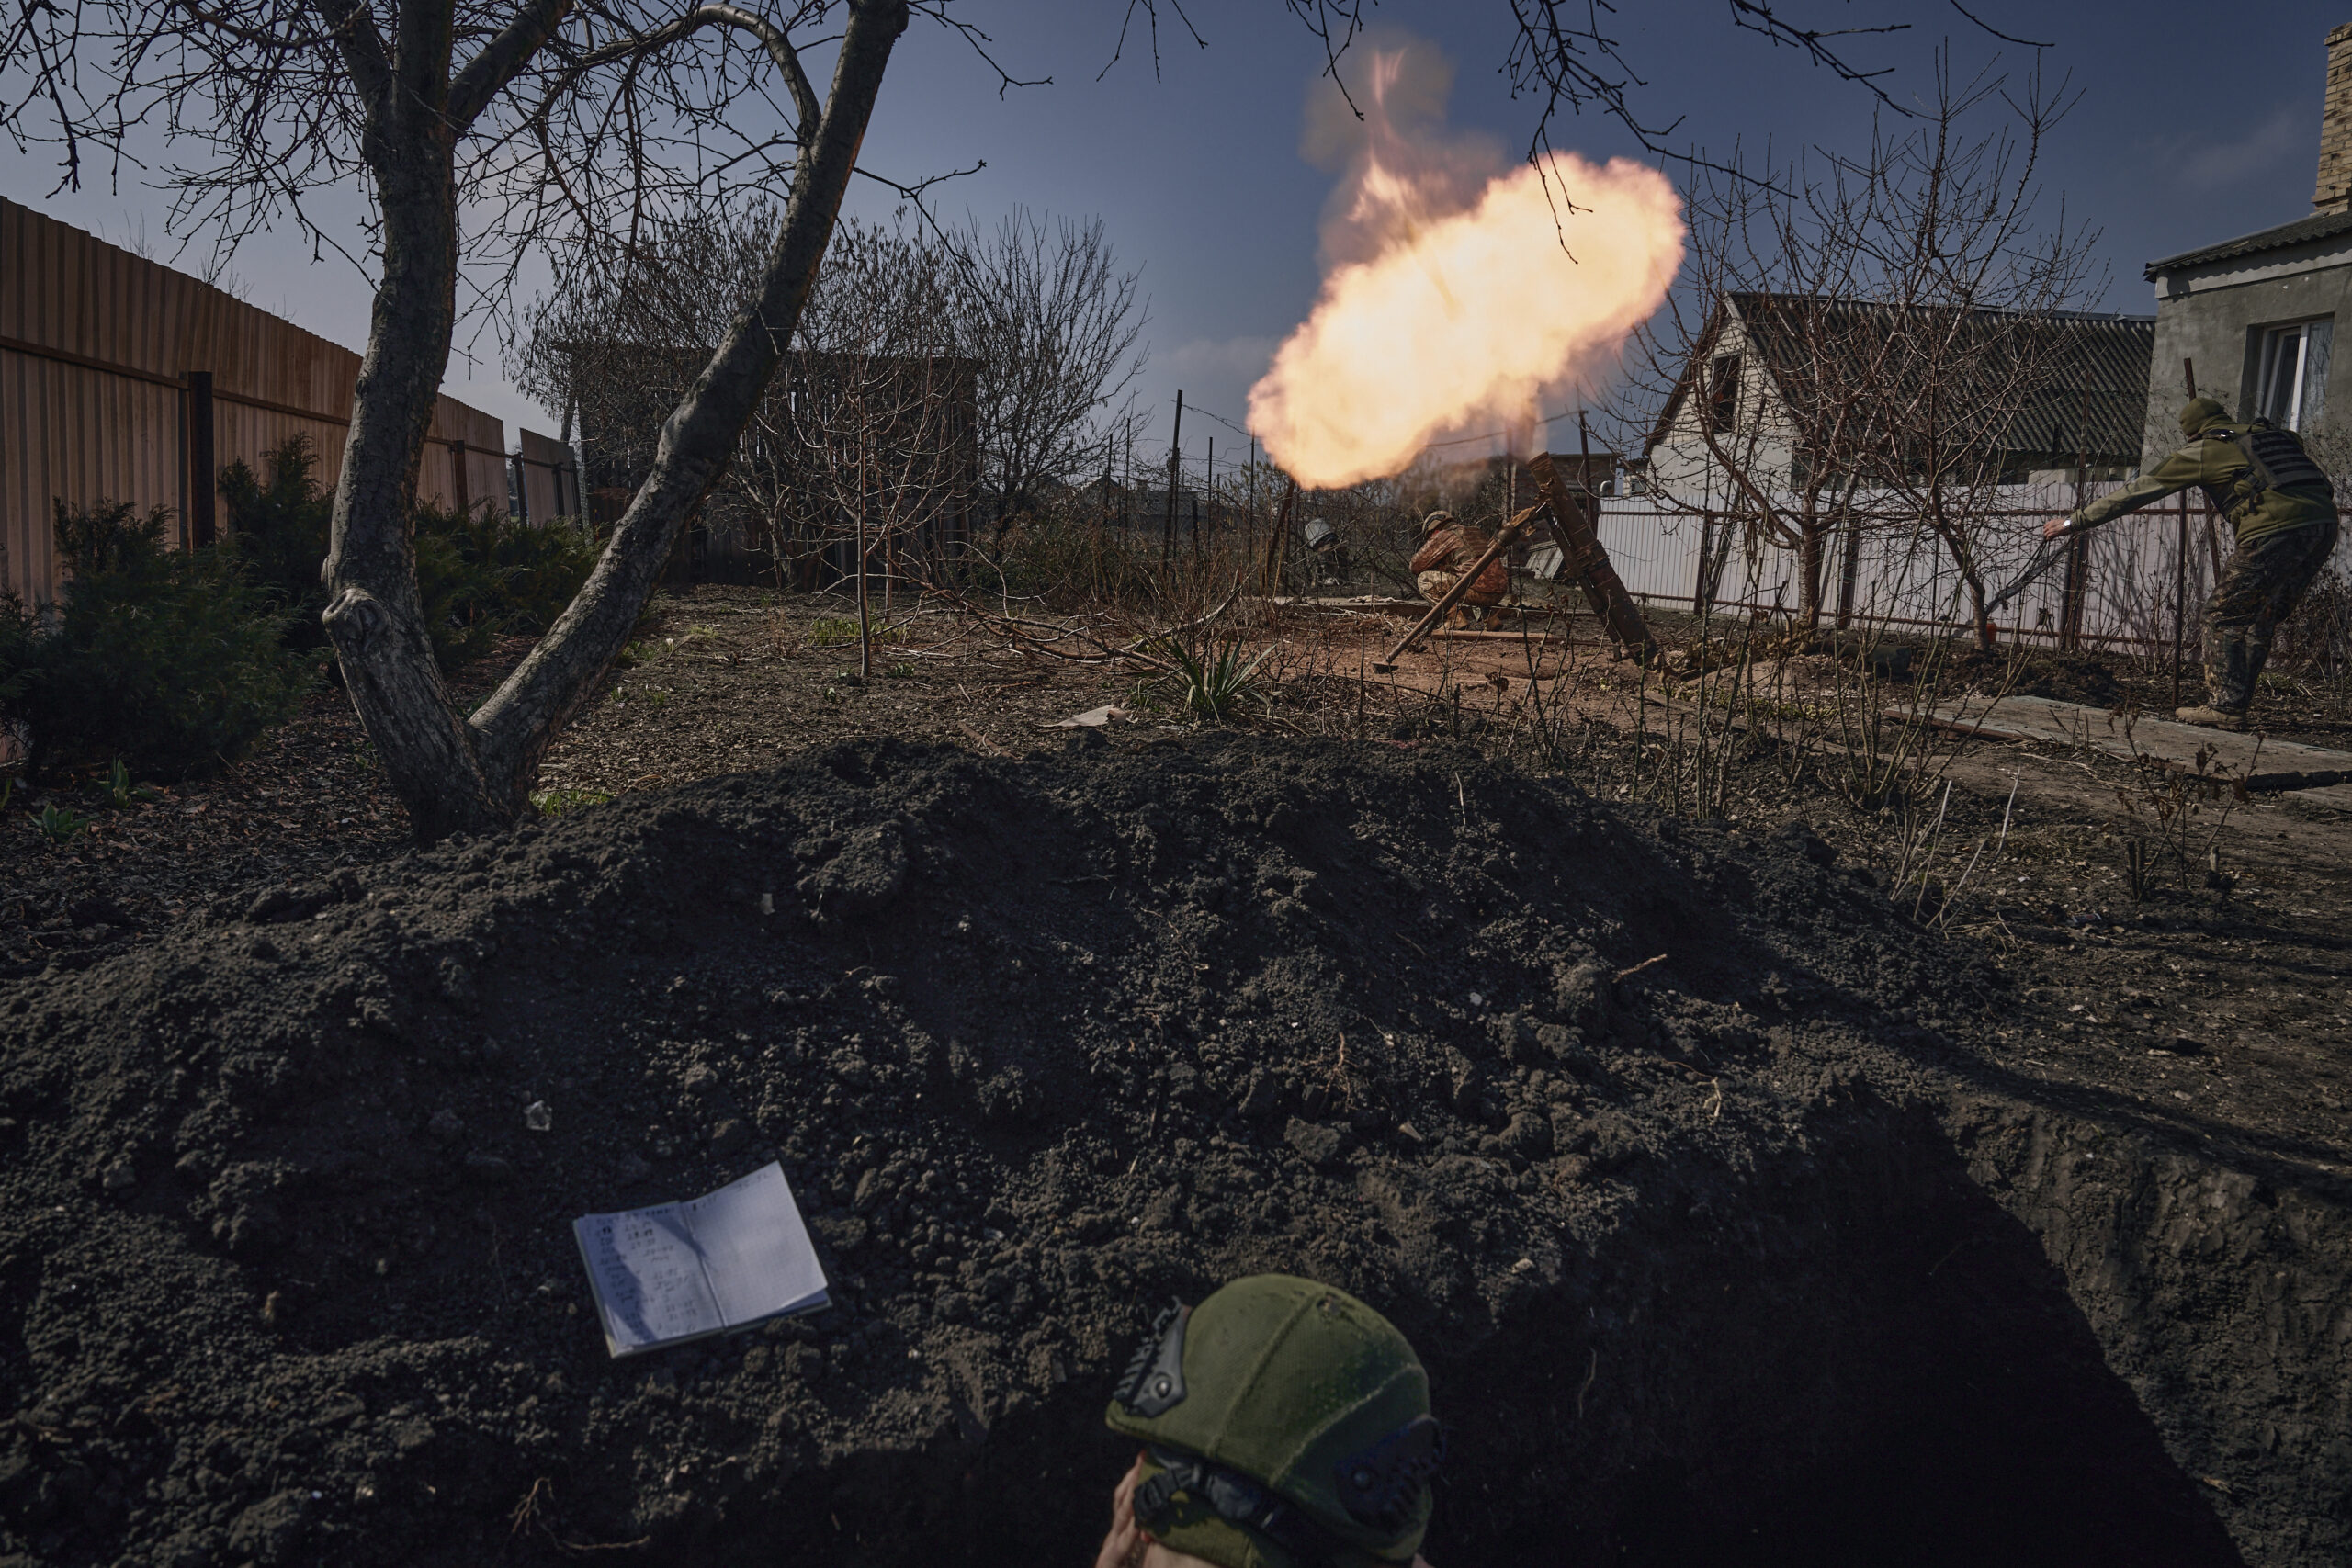 Ουκρανία: Σε «σκηνικό ταινίας μετά την αποκάλυψη» μετατρέπεται η Αβντιίβκα – Εντατικοποιούν τους βομβαρδισμούς οι ρωσικές δυνάμεις